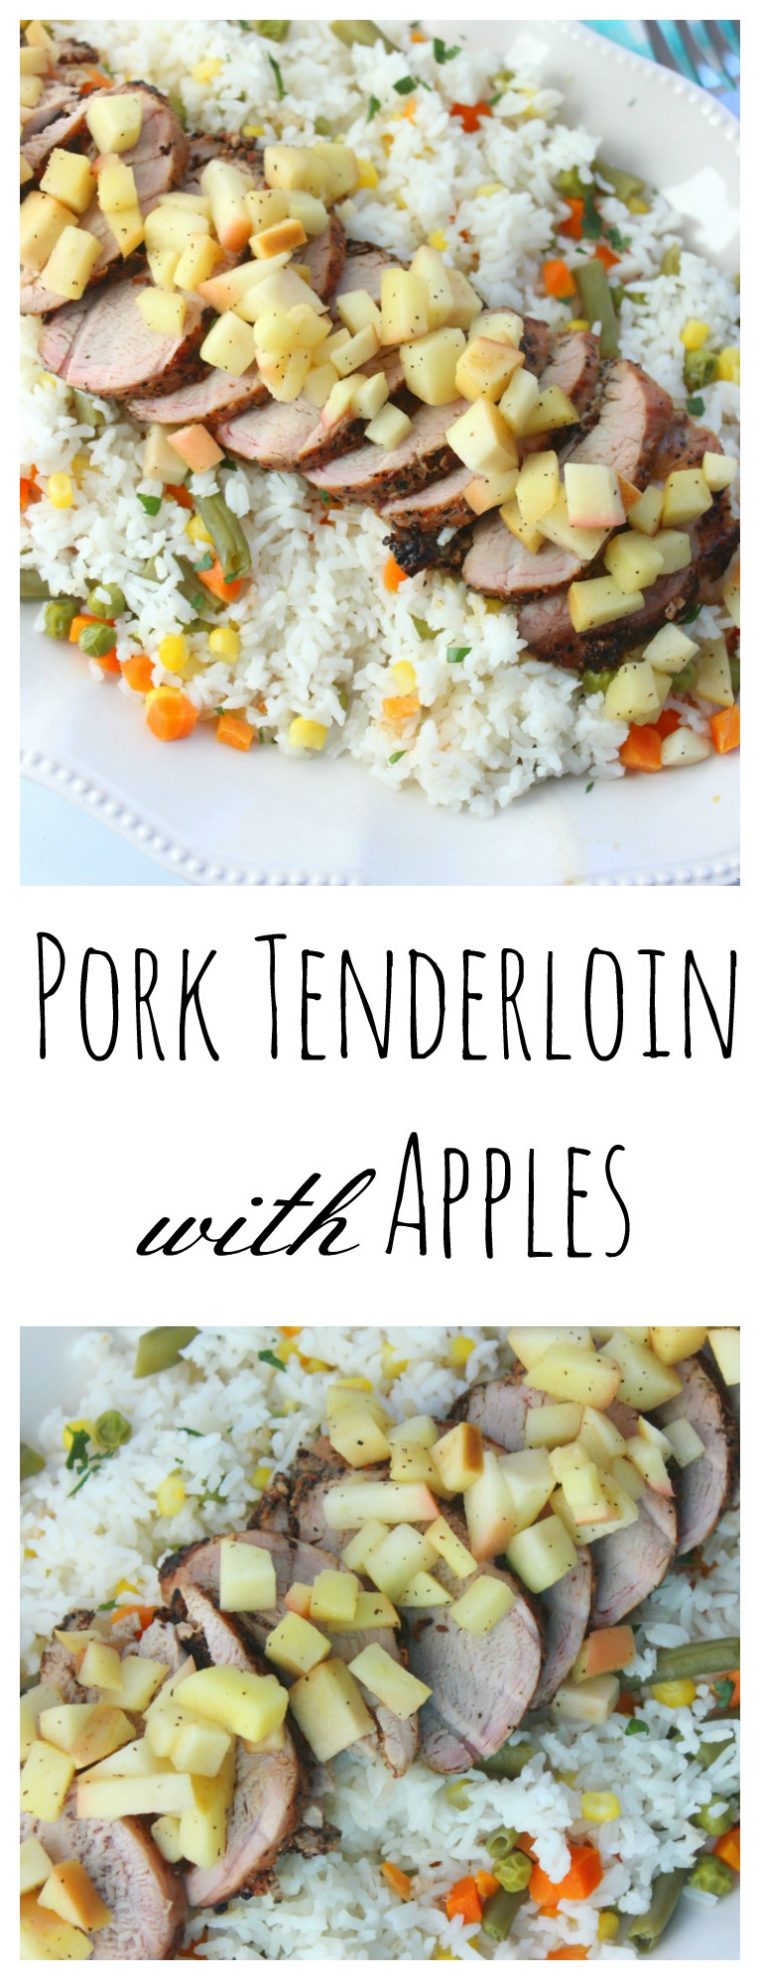 pork-tenderloin-with-apples-final